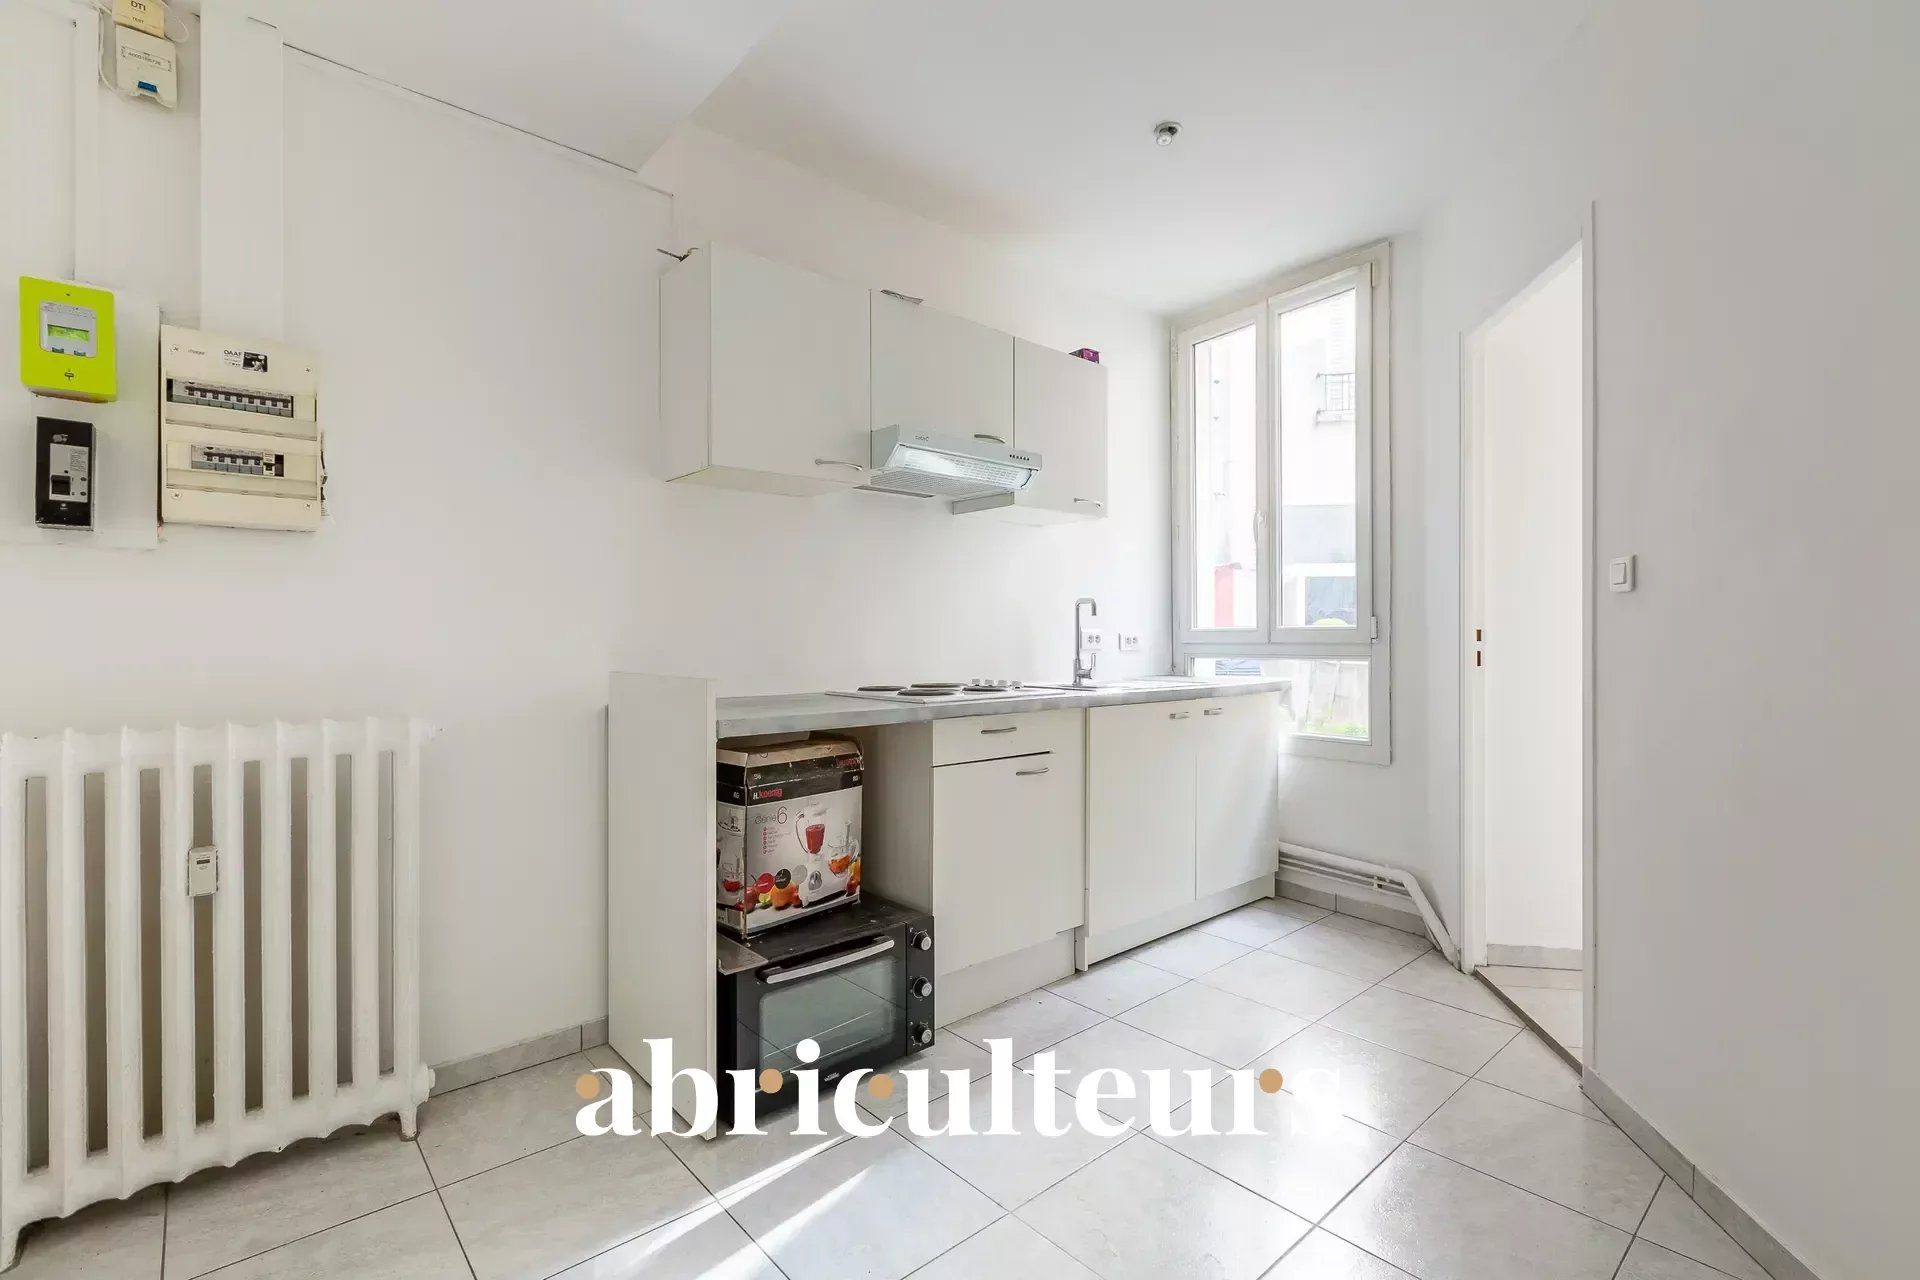 Appartement 2 pièces - 32m² - Rue Etienne Marey - 75020 Paris